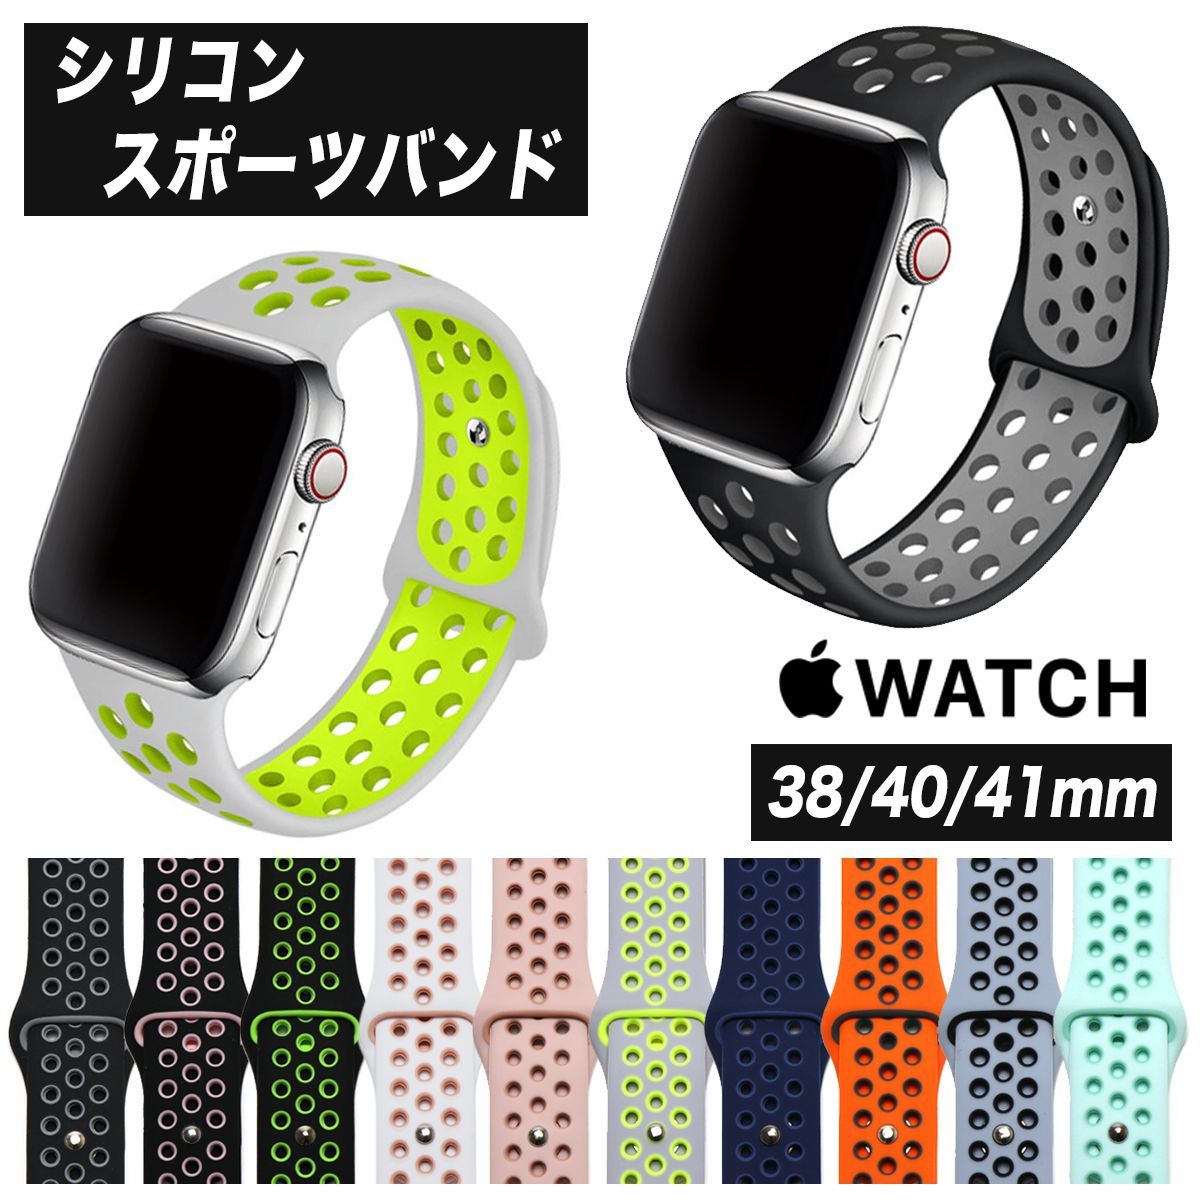 Apple Watch NIKEスポーツバンド 38 40 41 mm - ラバーベルト